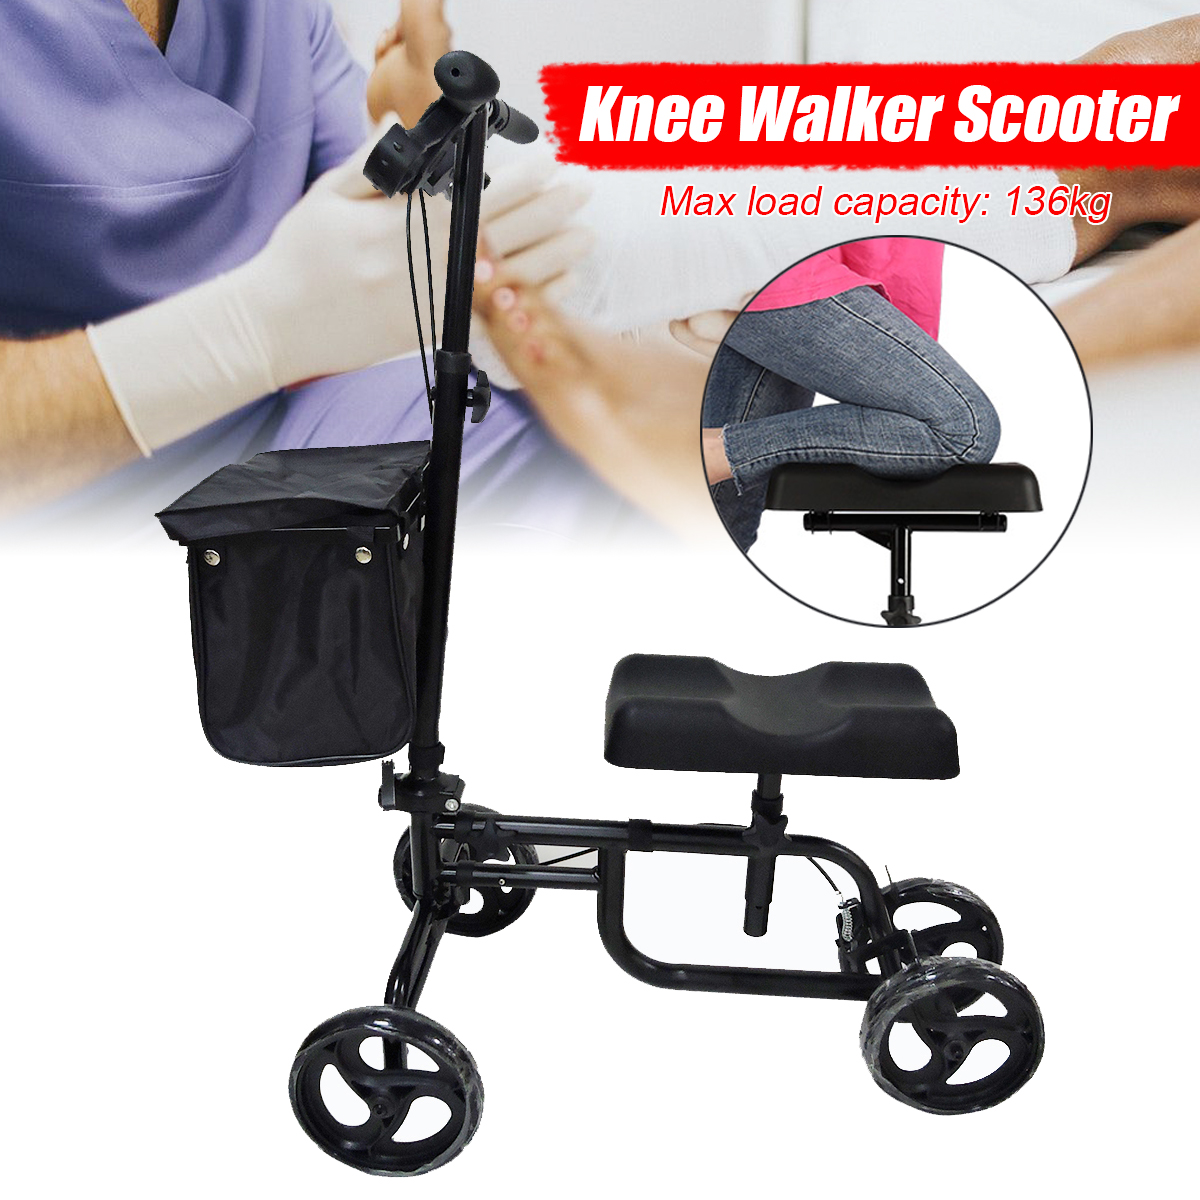 Mobility-Knee-Walker-Scooter-Roller-Crutch-Leg-Steerable-Foldable-Design-Adjustable-Height-Adjustabl-1940054-1